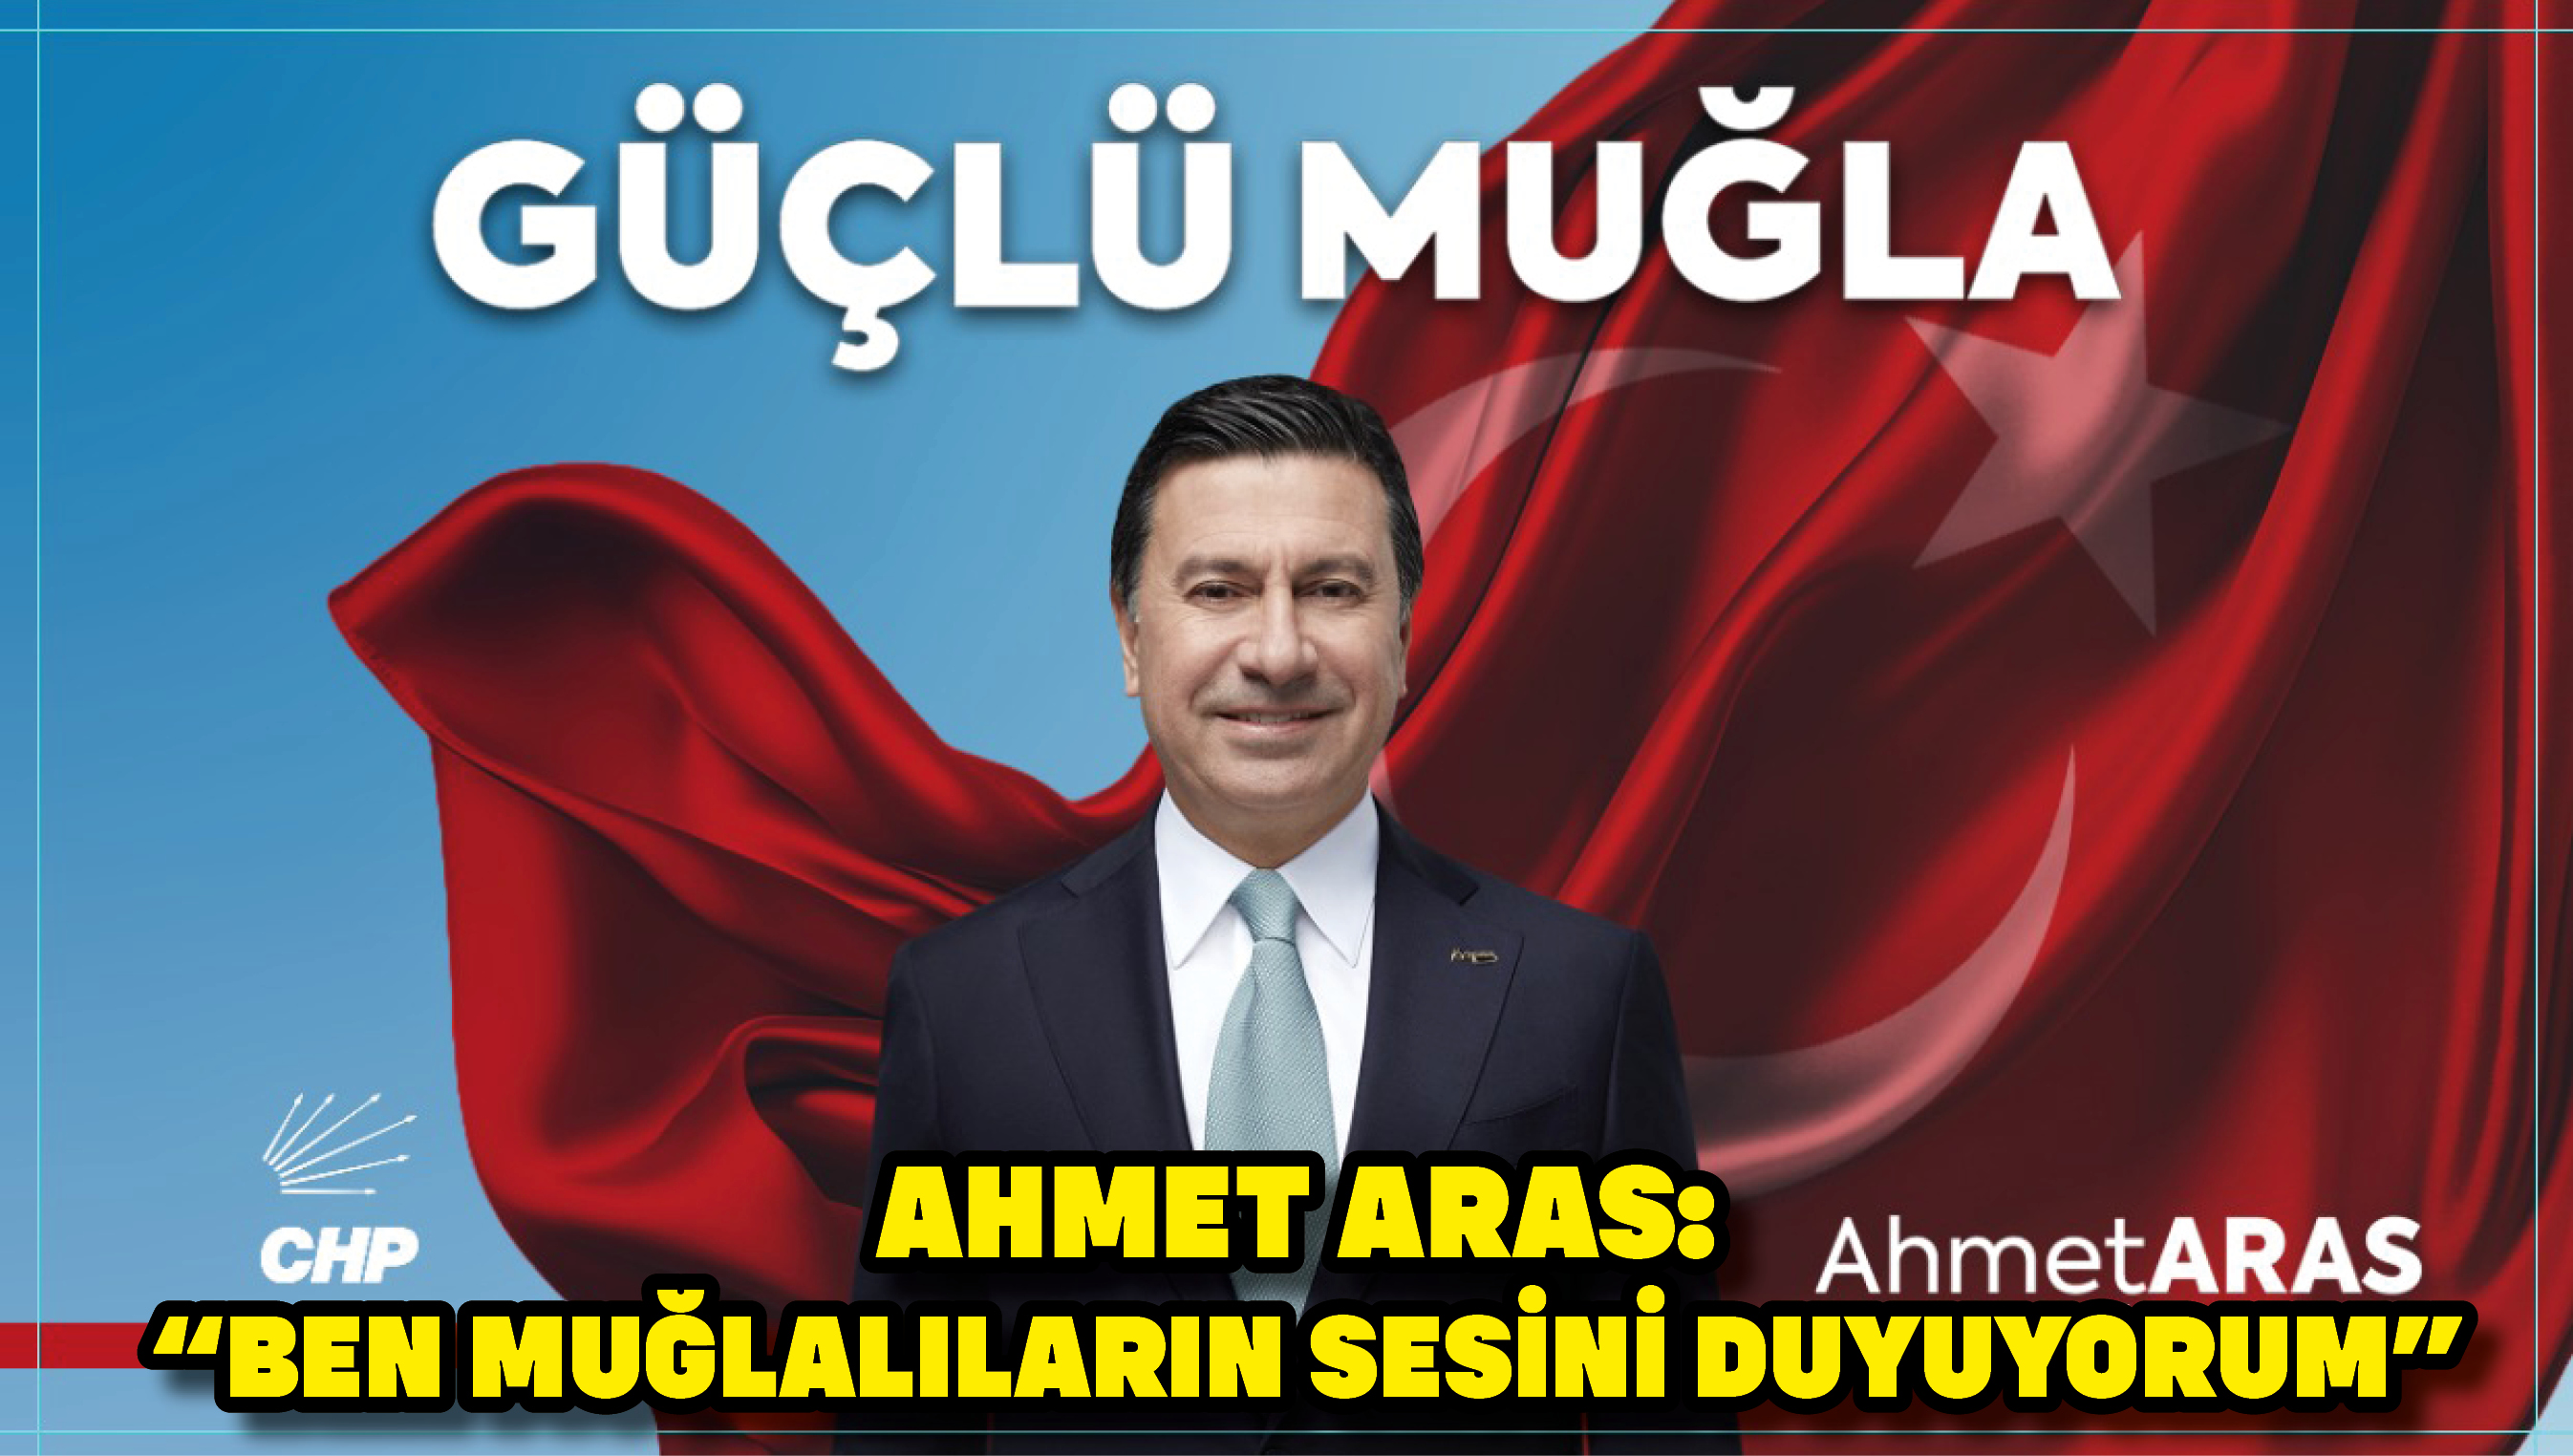 Ahmet Aras: “Ben Muğlalıların sesini duyuyorum”